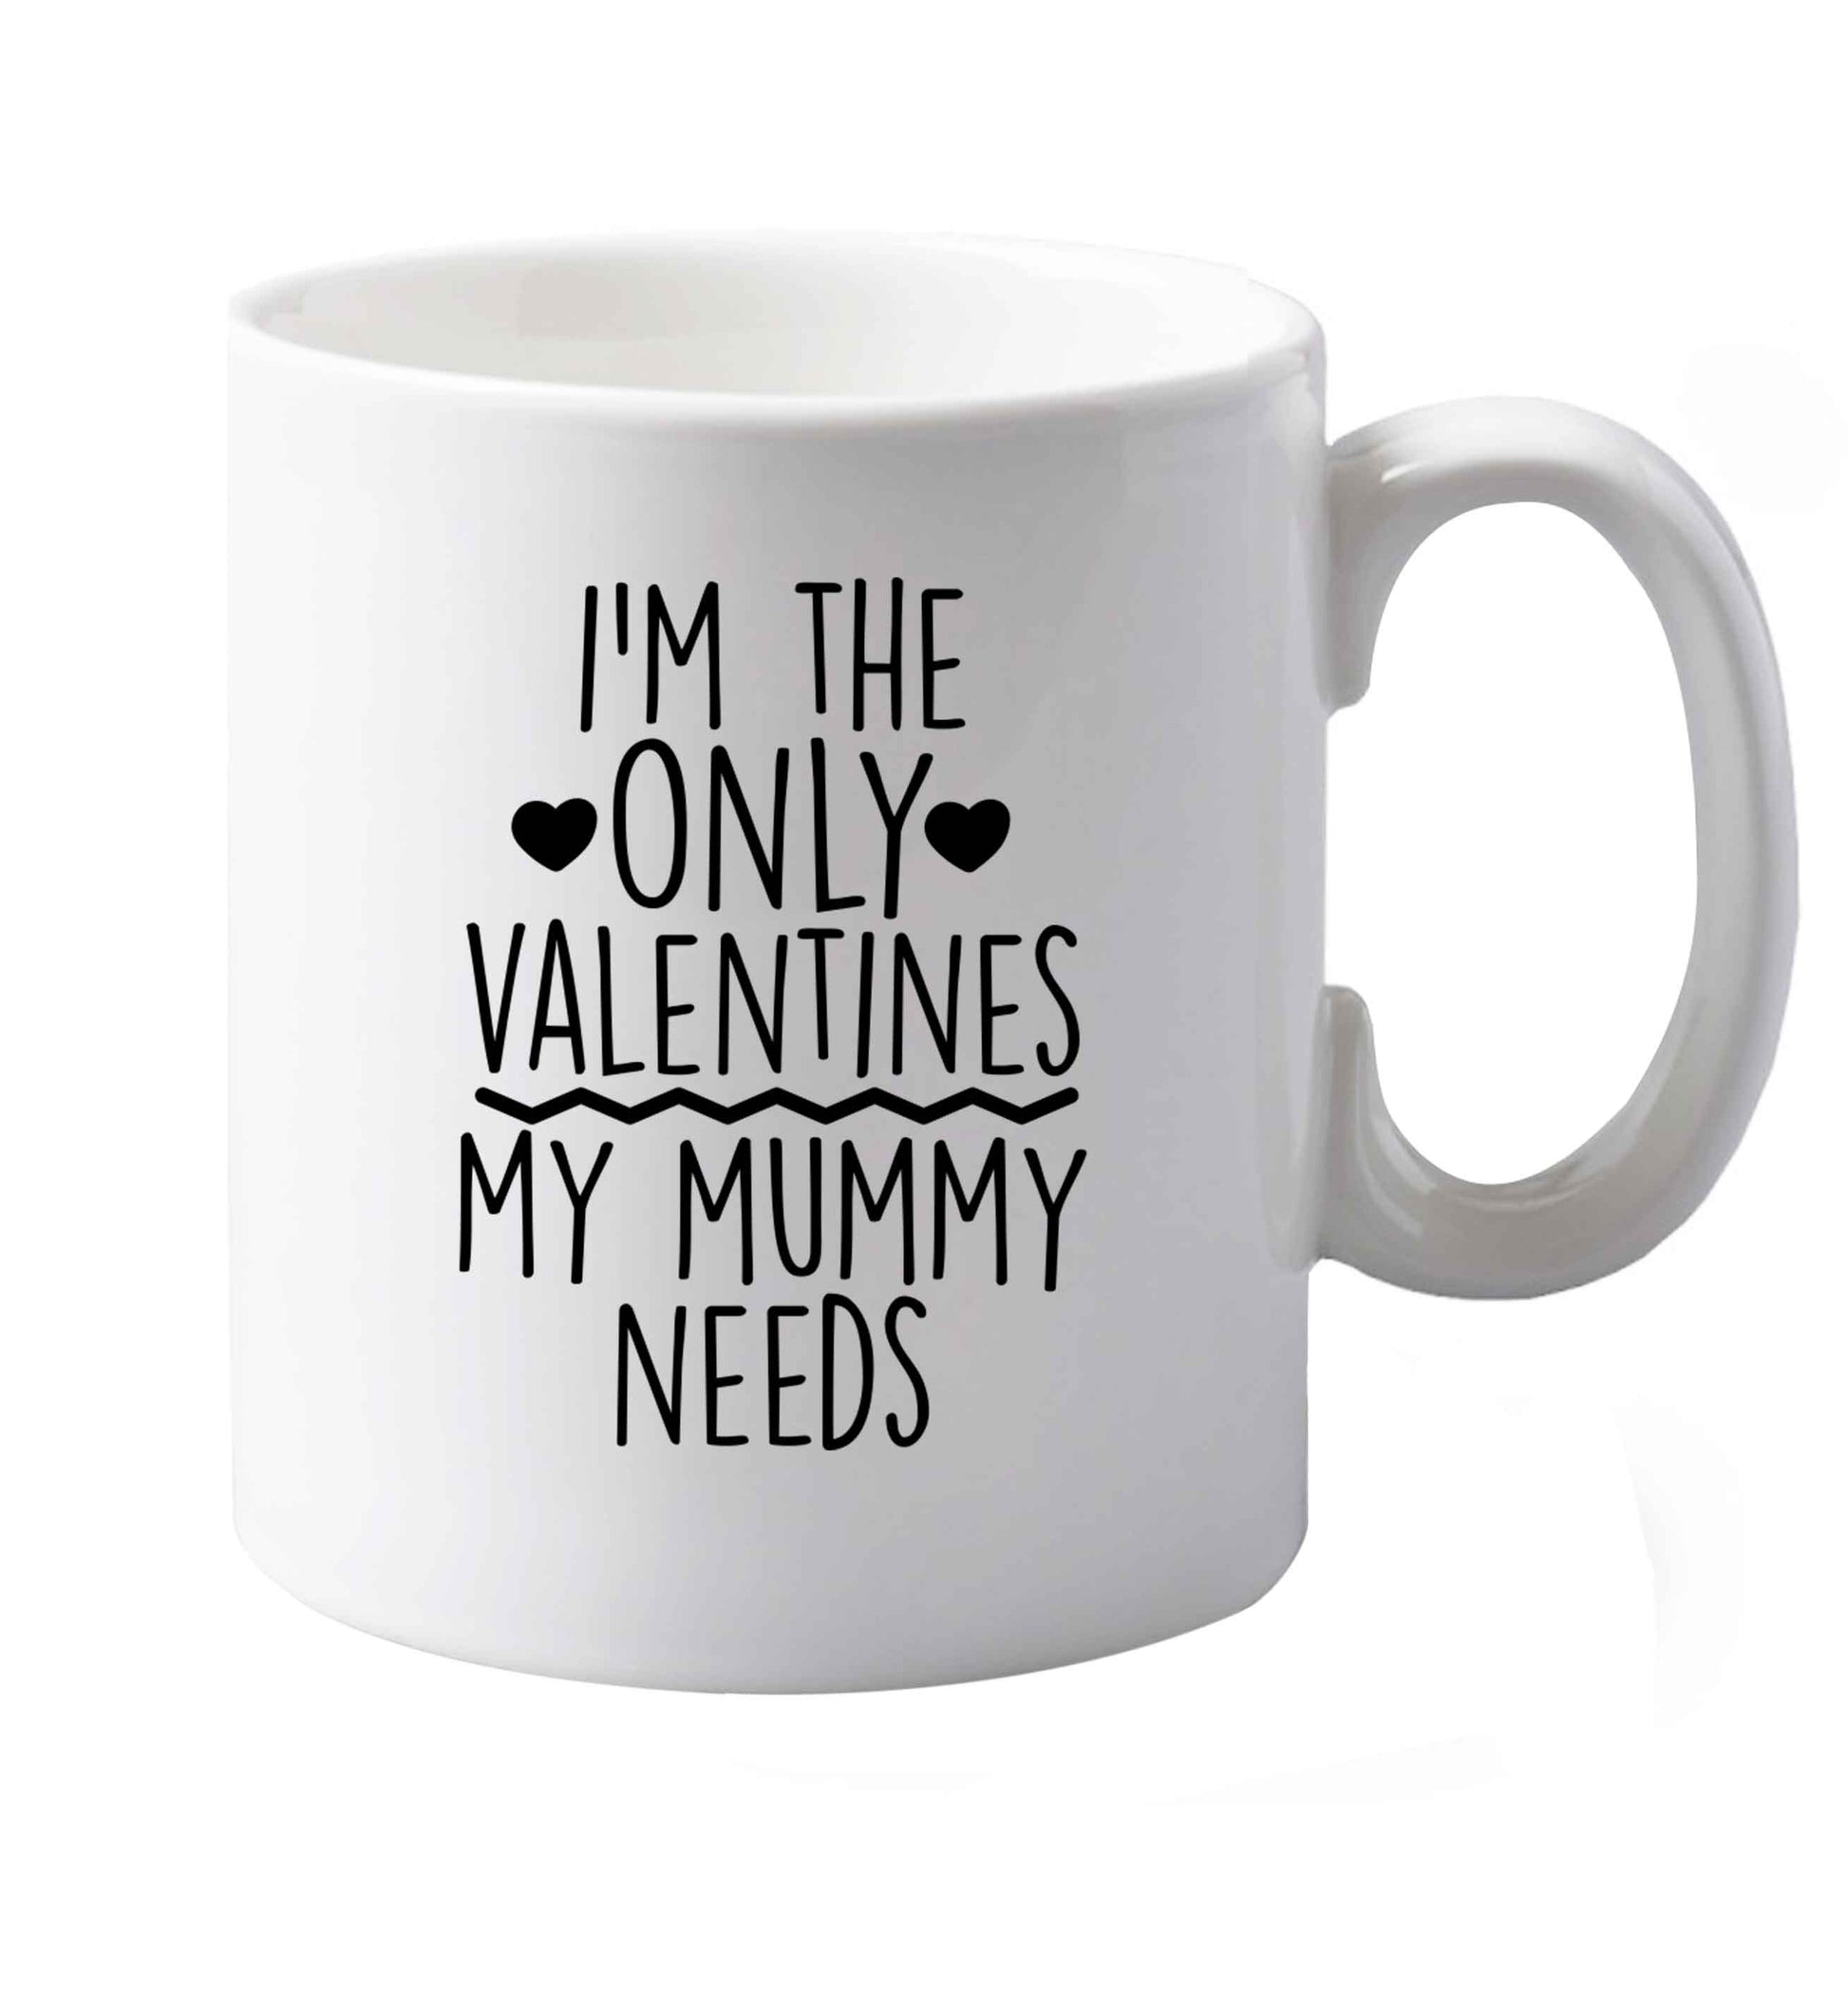 10 oz I'm the only valentines my mummy needs ceramic mug both sides